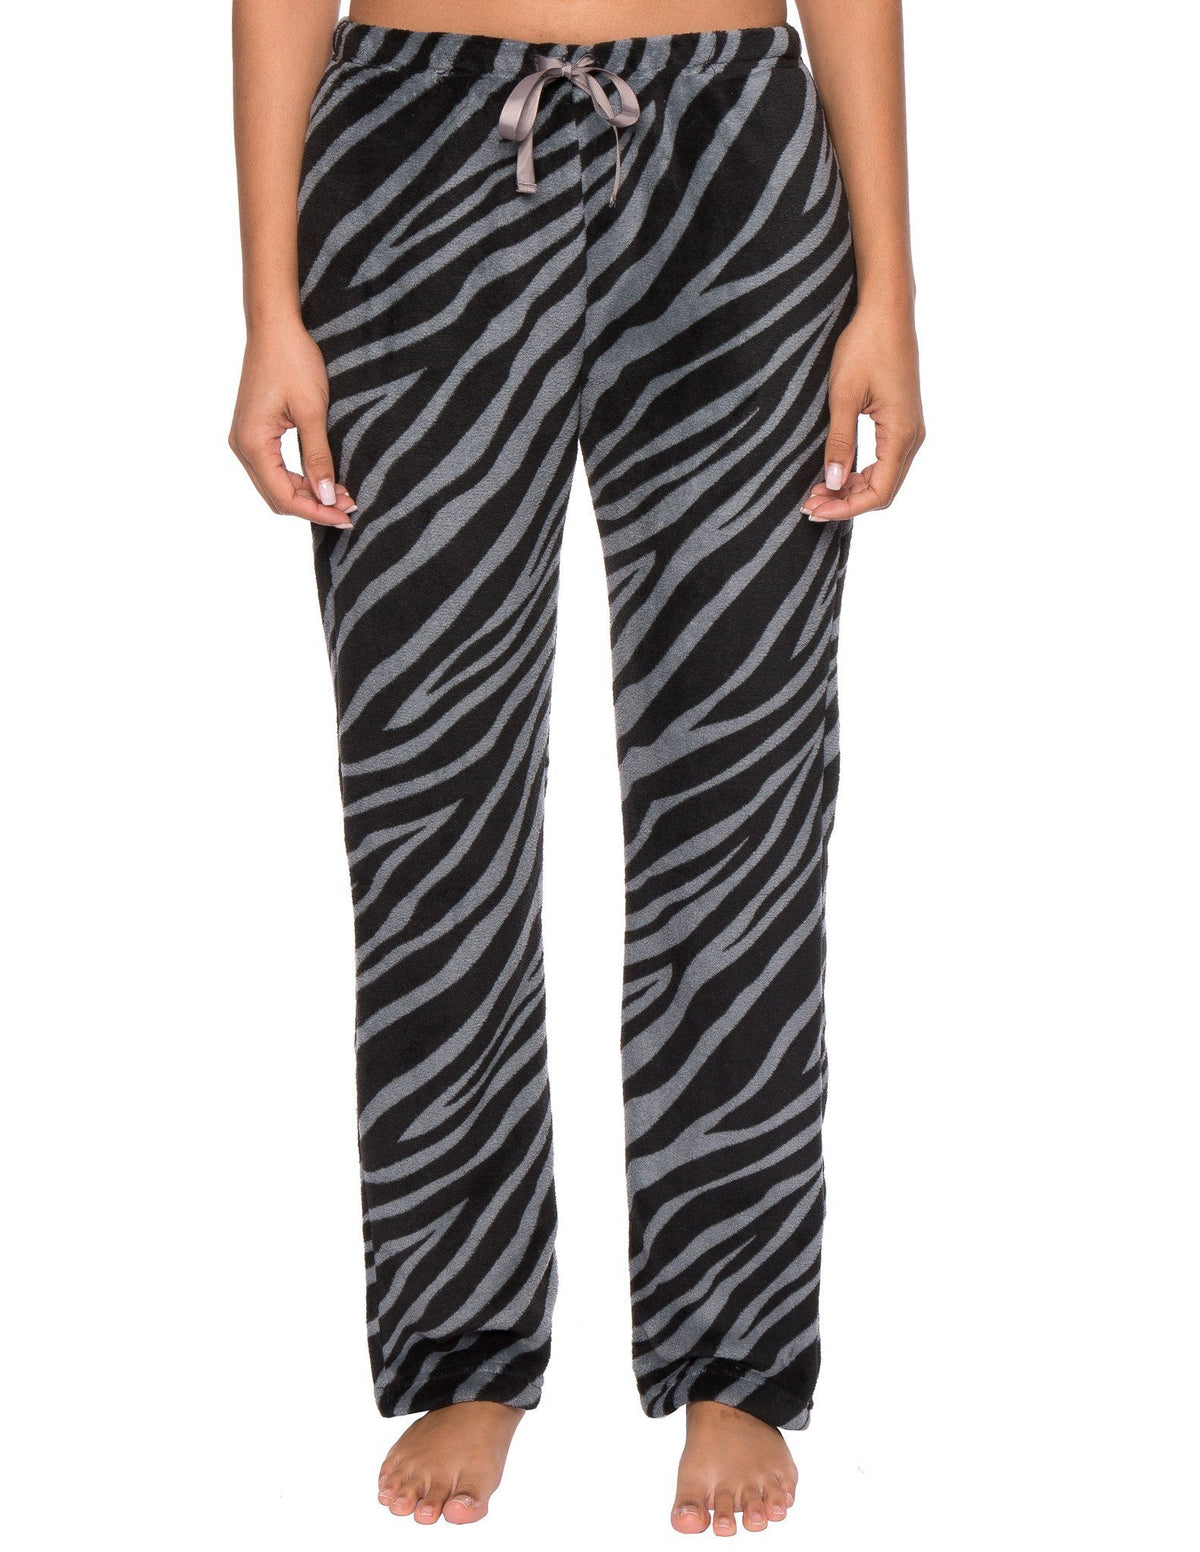 Women's Coral Fleece Plush Lounge Pants - Zebra - Charcoal/Black